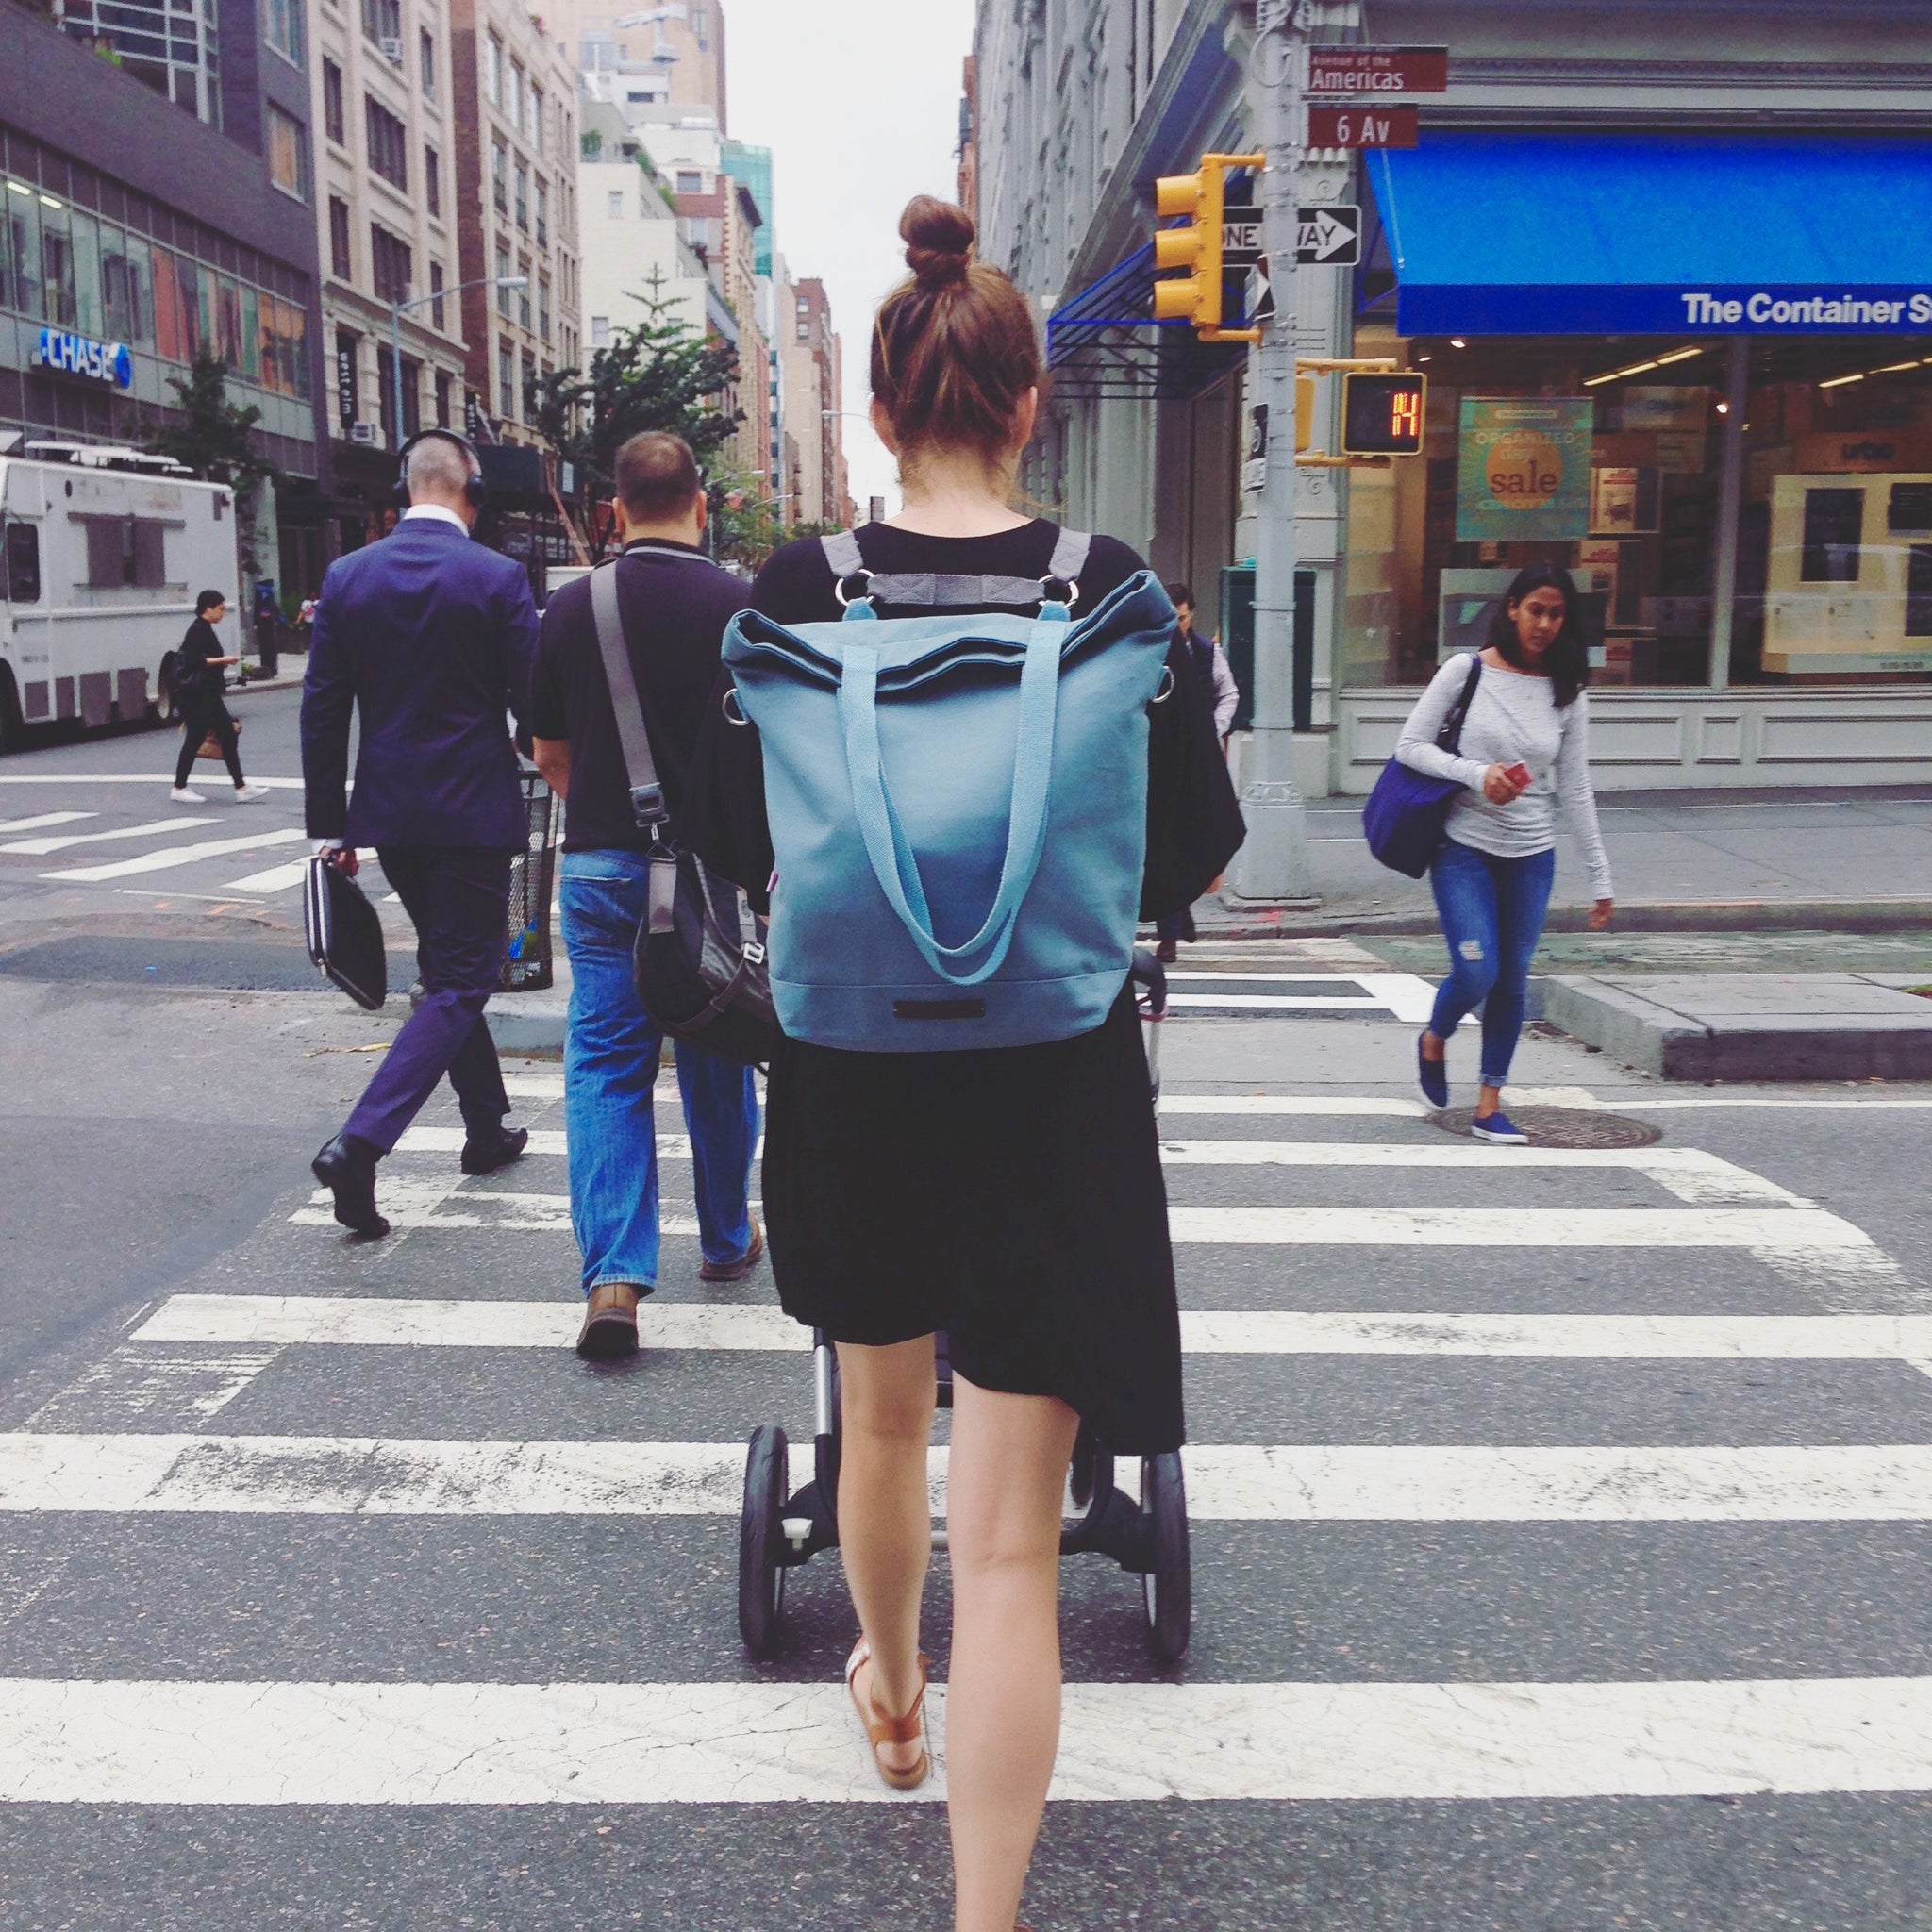 mara mea Blogpost Städtetrip New York Reise mit Baby